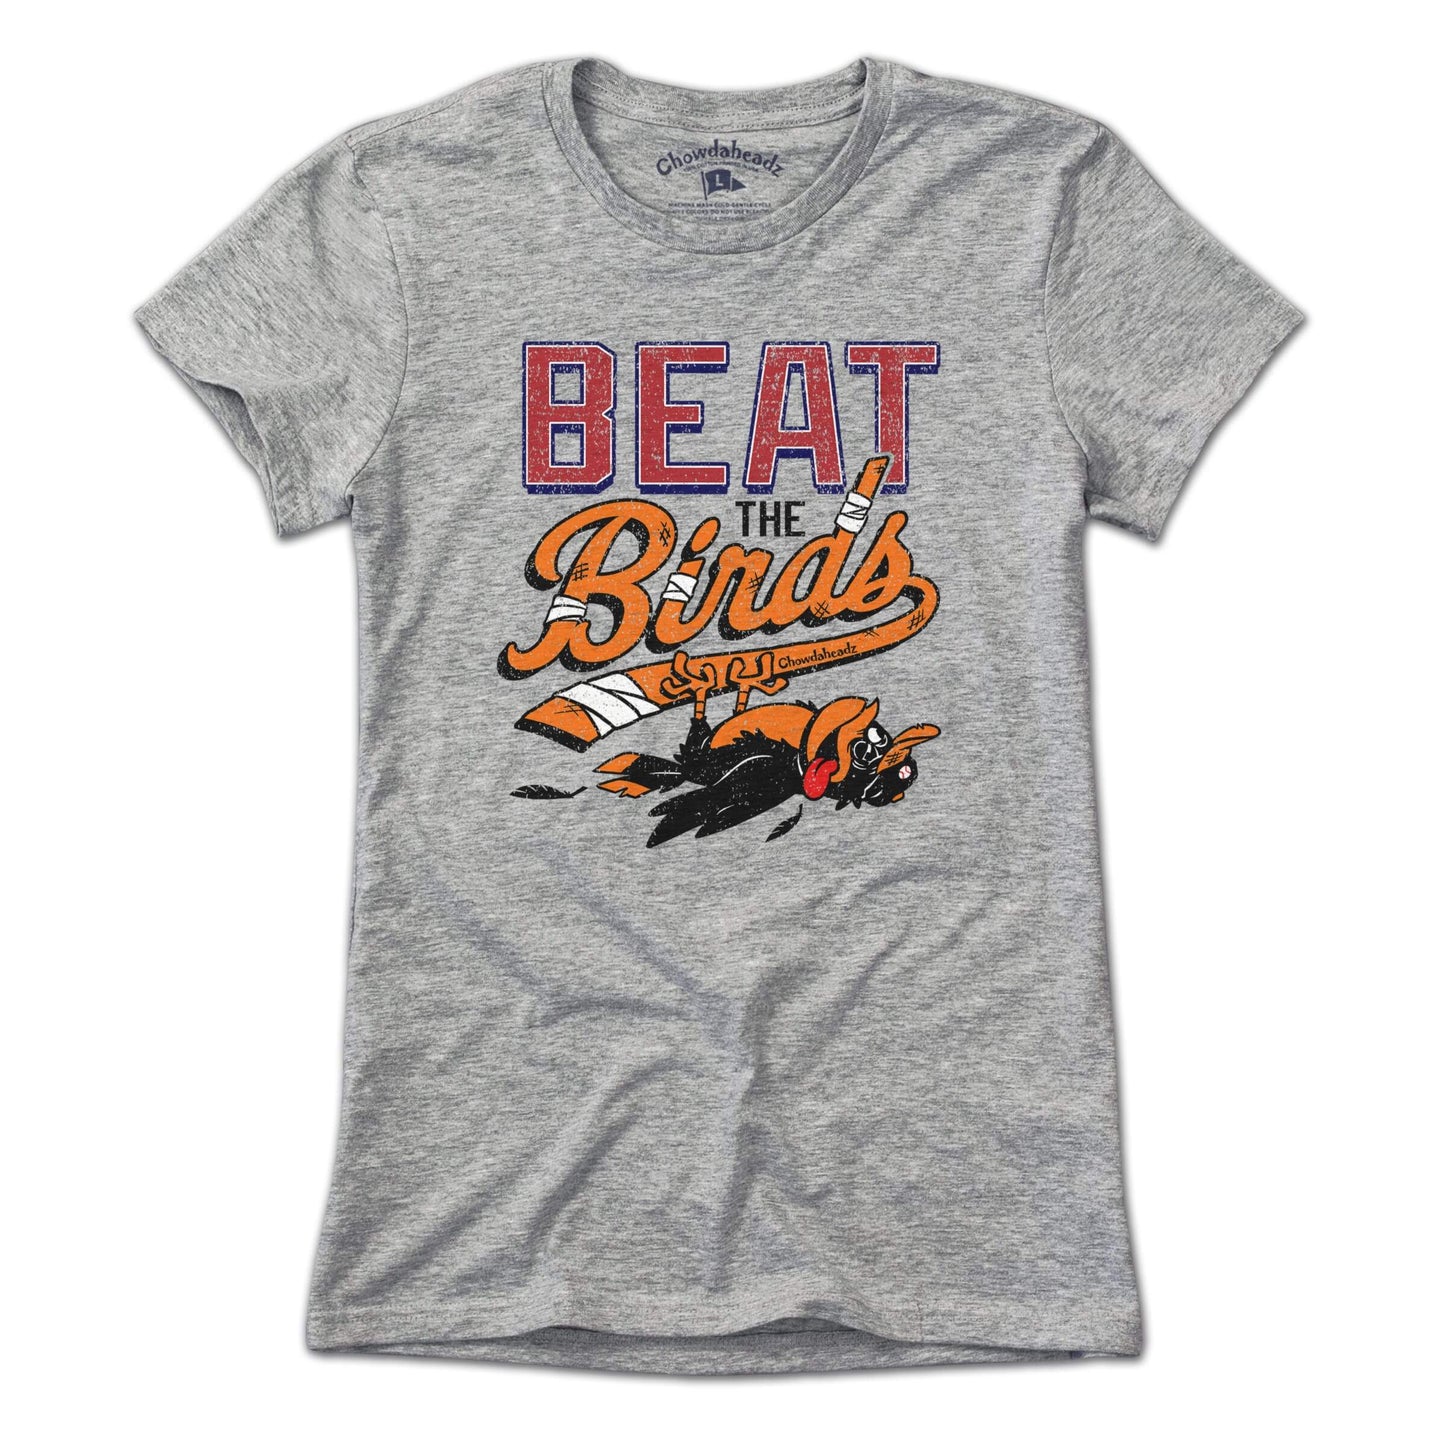 Beat the Birds T-Shirt - Chowdaheadz